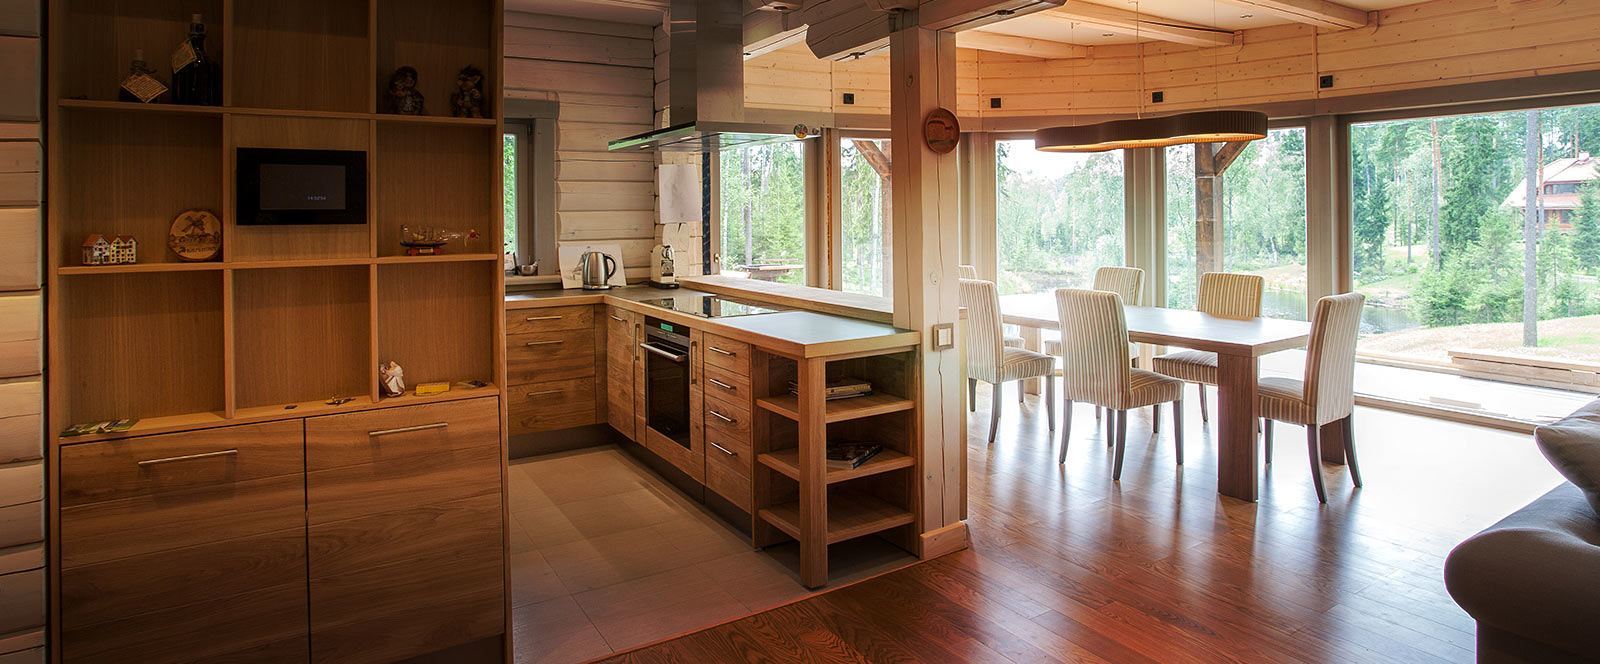 interior kitchen wooden rack